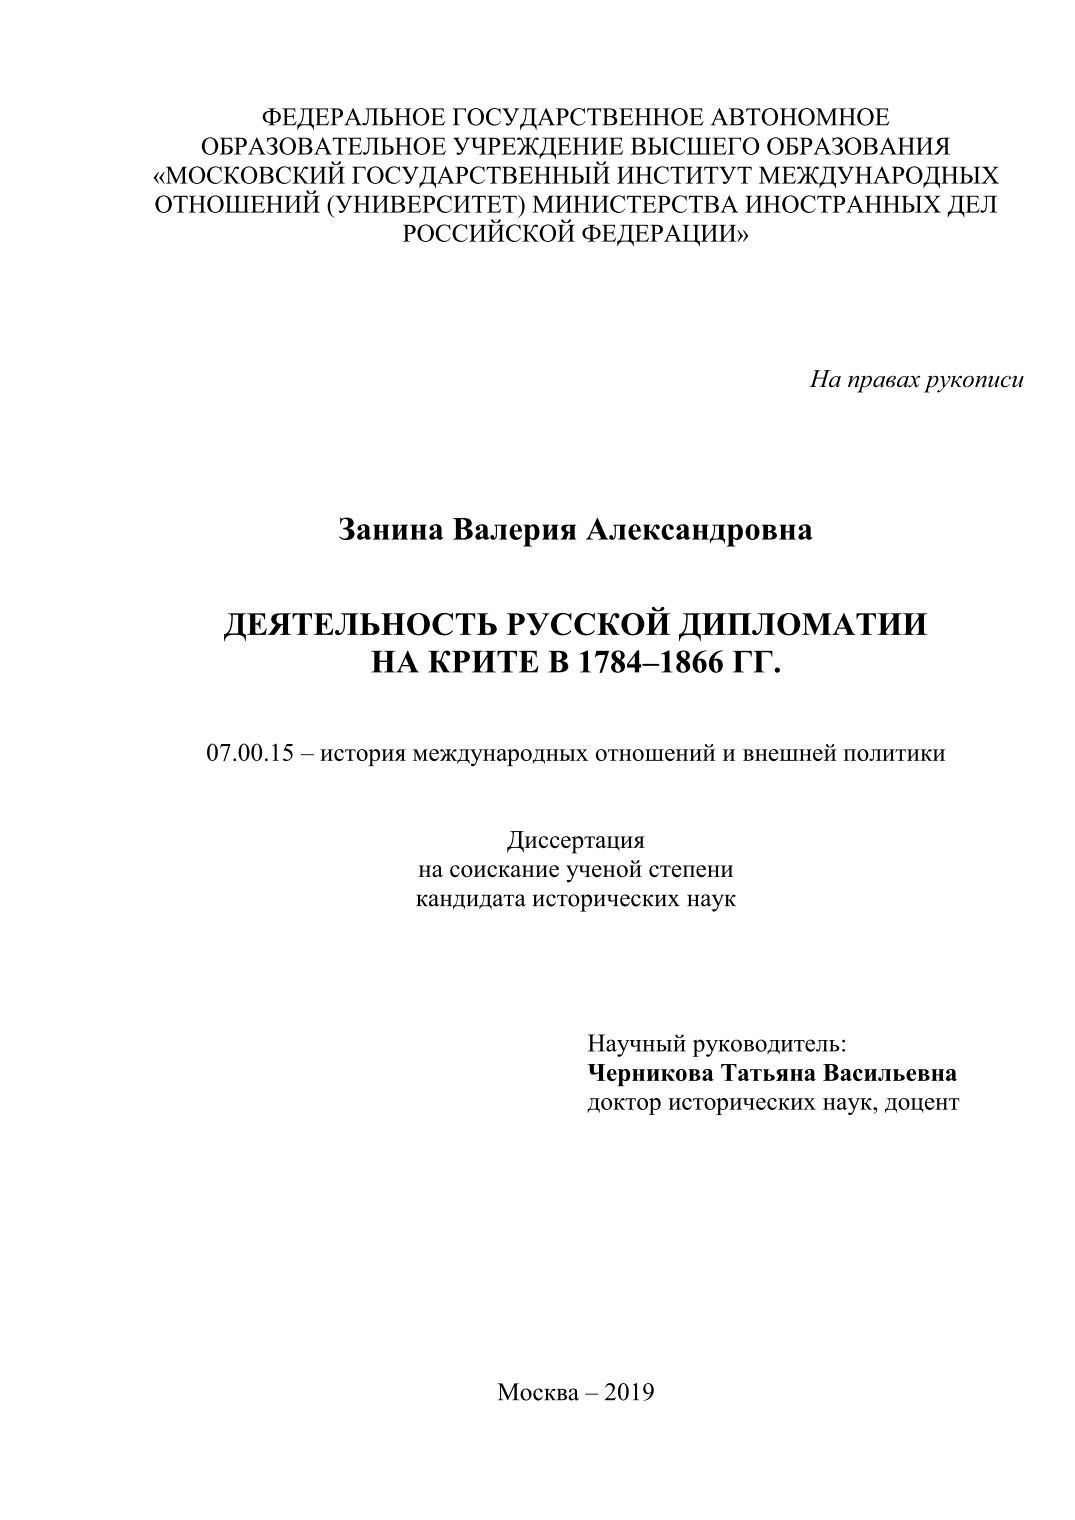 Деятельность русской дипломатии на Крите в 1784-1866 гг.